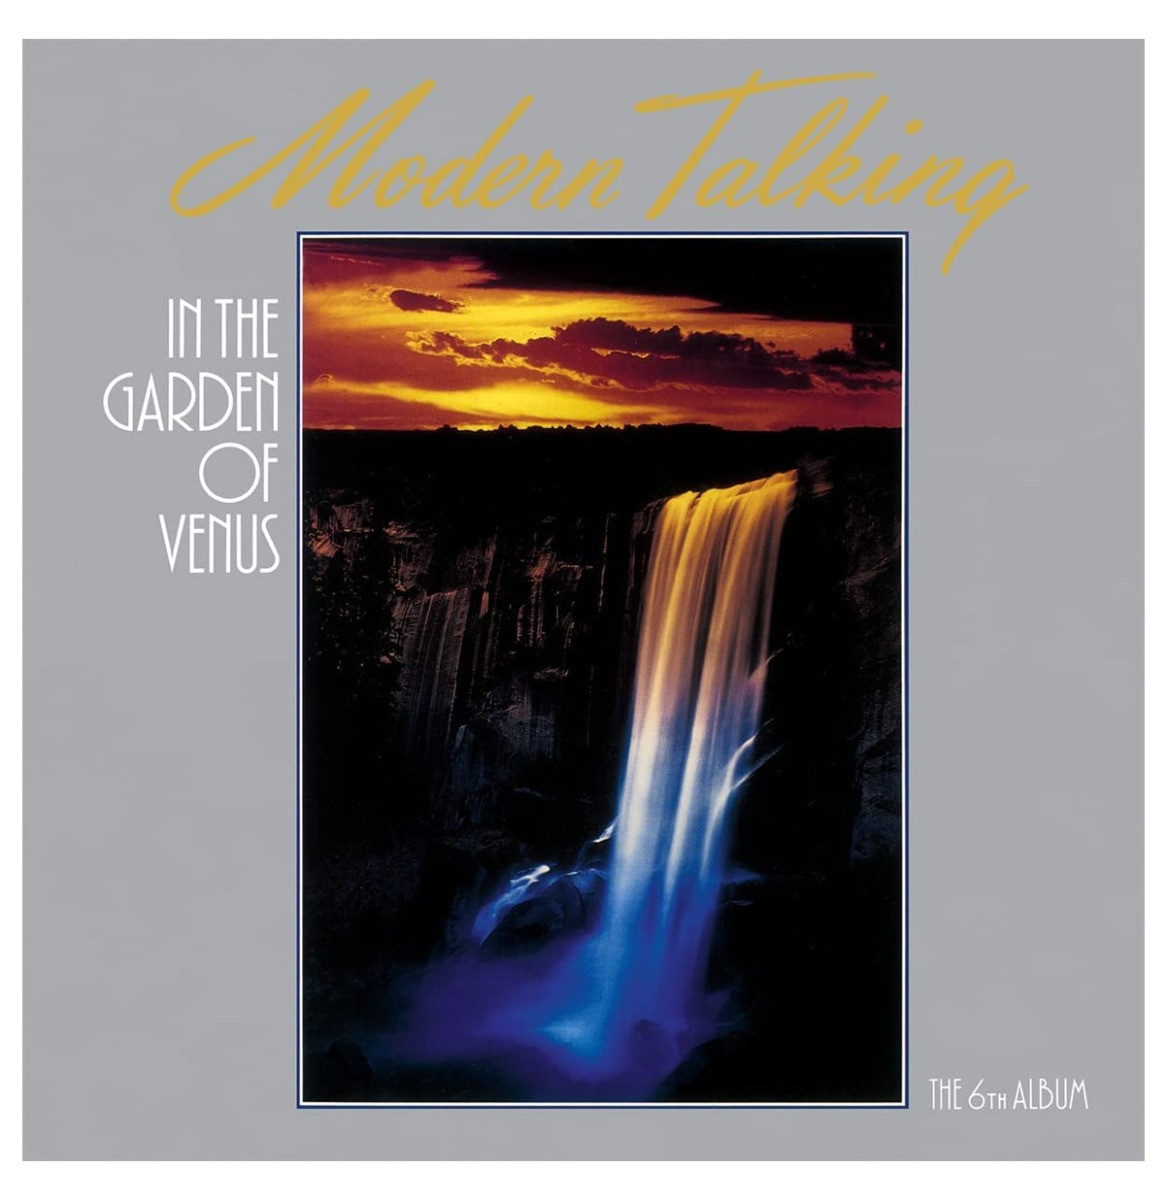 Modern Talking - In The Garden Of Venus LP